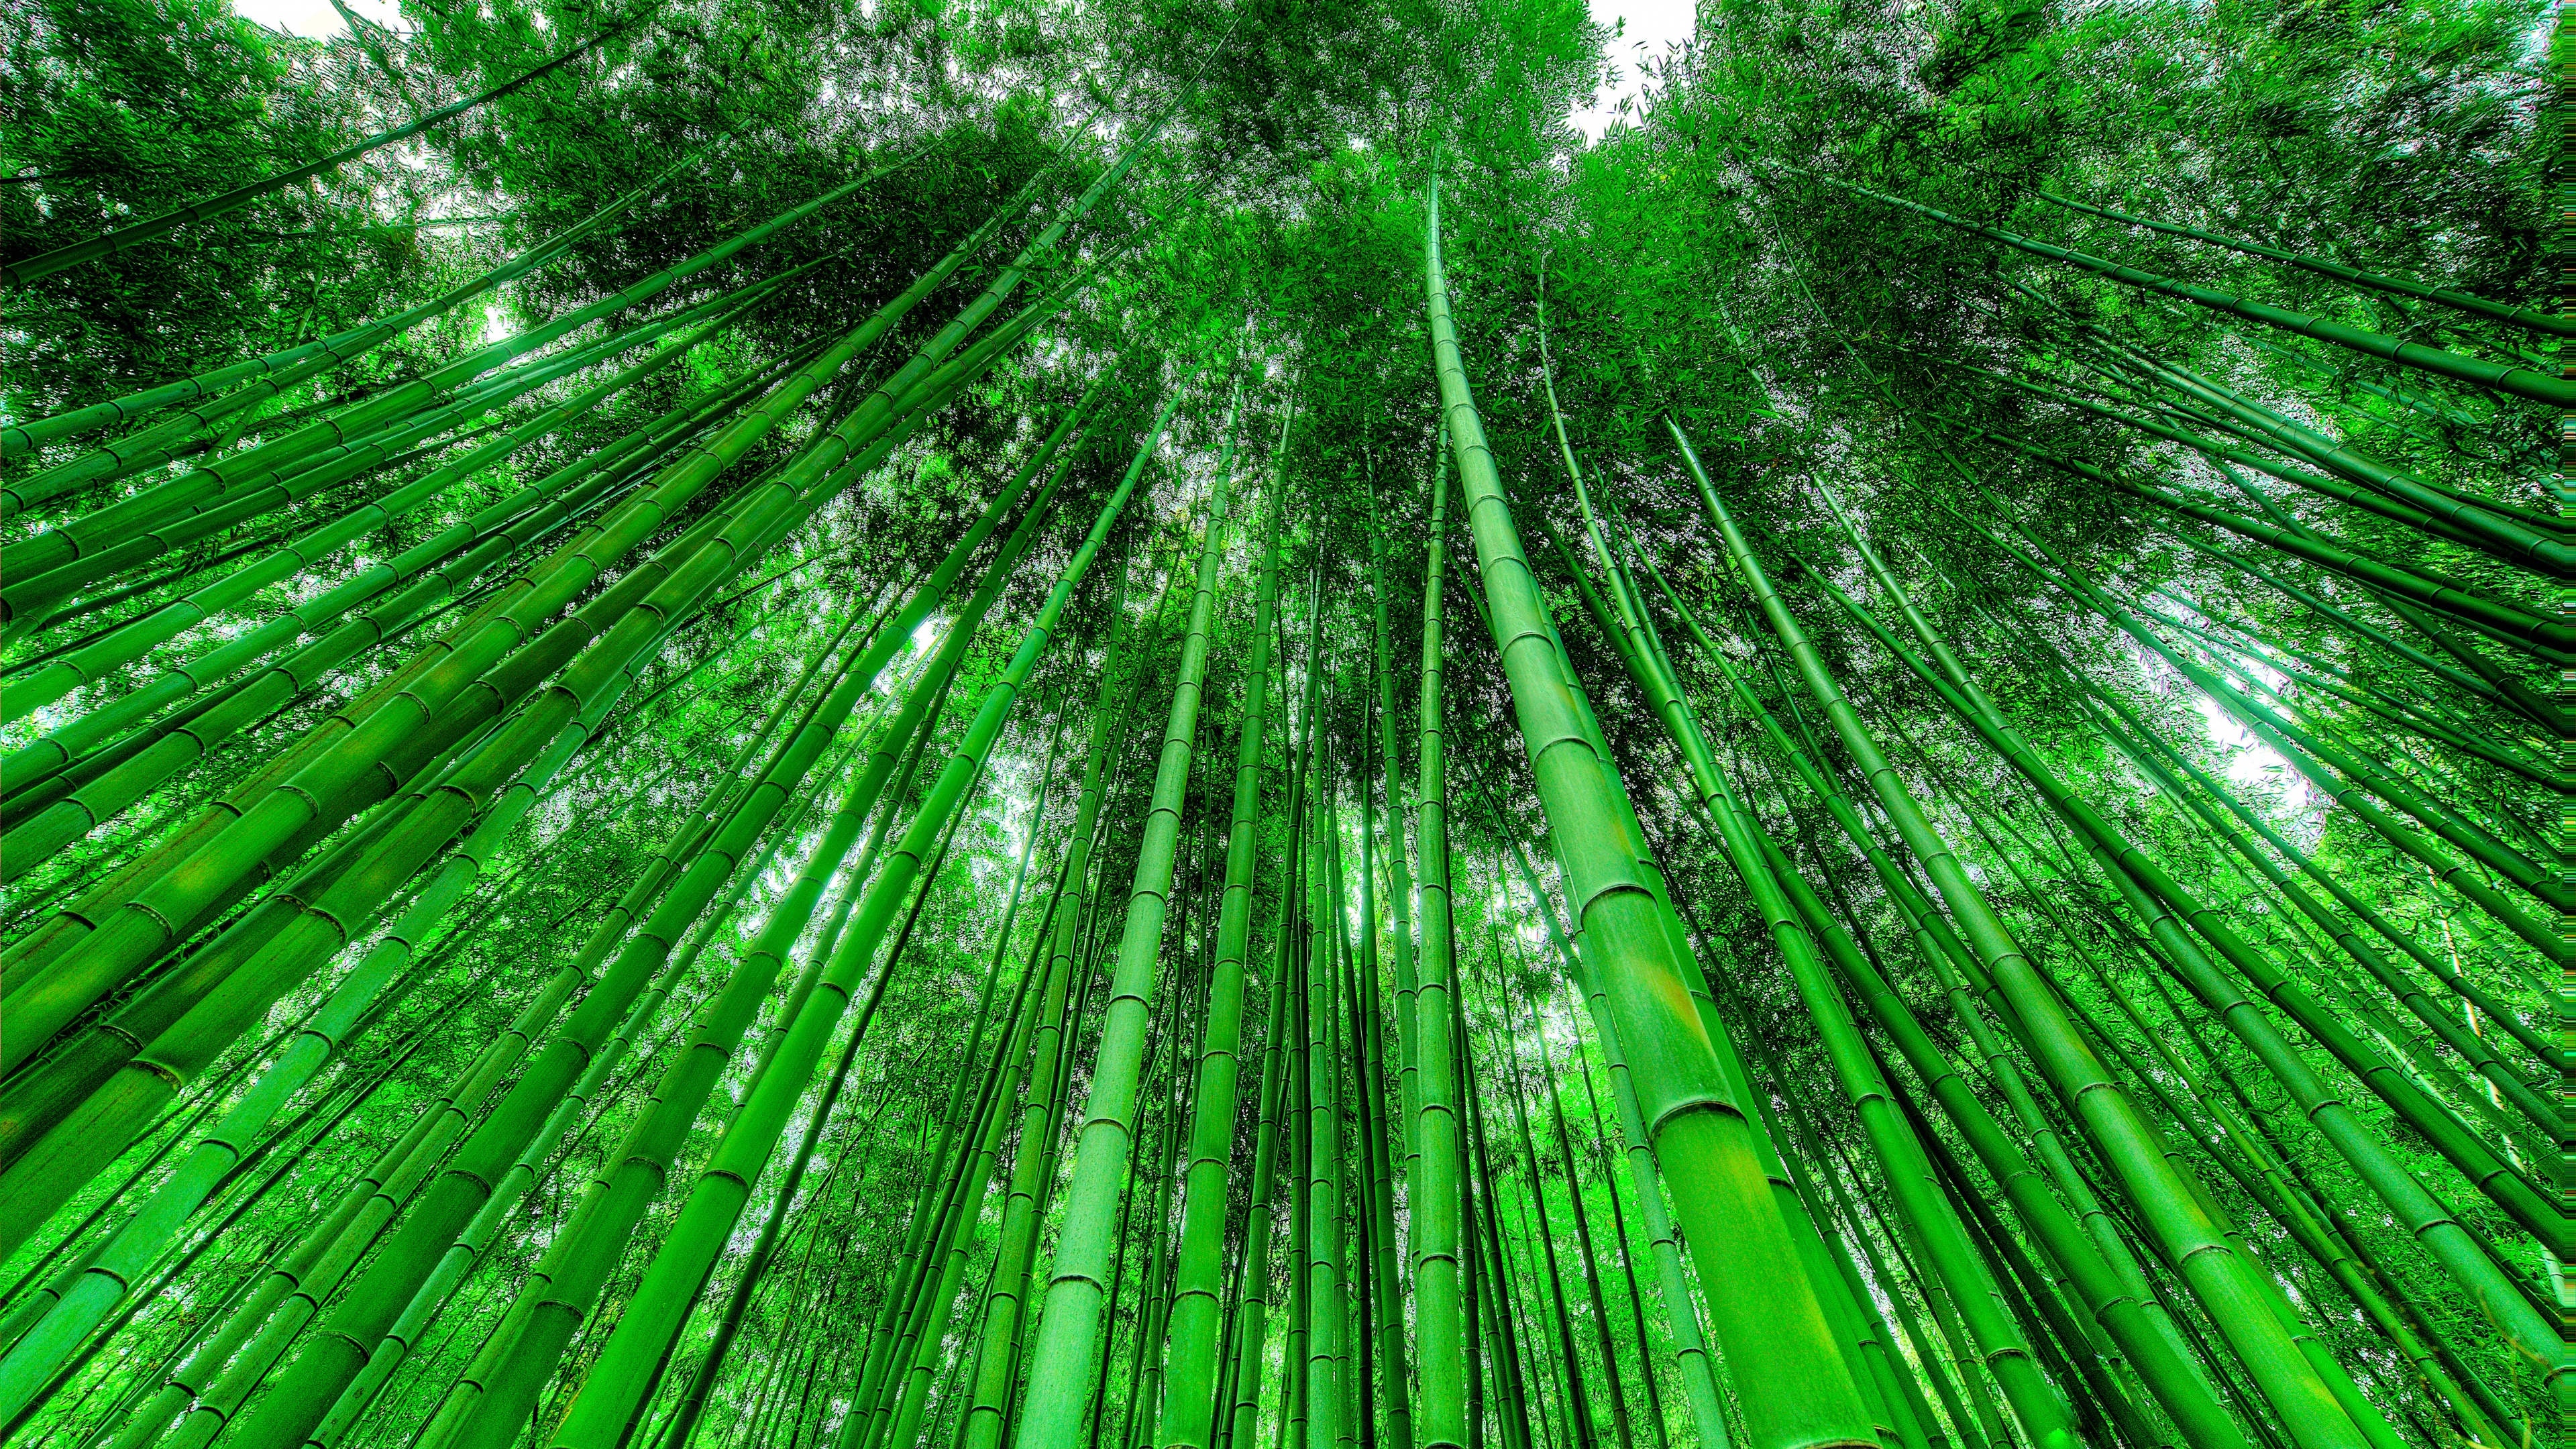 Hình nền rừng tre: Muốn cảm nhận những khung cảnh hoang sơ, xanh mát của rừng tre? Hãy cập nhật cho màn hình máy tính của bạn những hình nền rừng tre đầy màu sắc và sống động. Những hình ảnh này sẽ giúp bạn thư giãn và tận hưởng không gian thiên nhiên tuyệt vời ngay trên màn hình máy tính của mình.